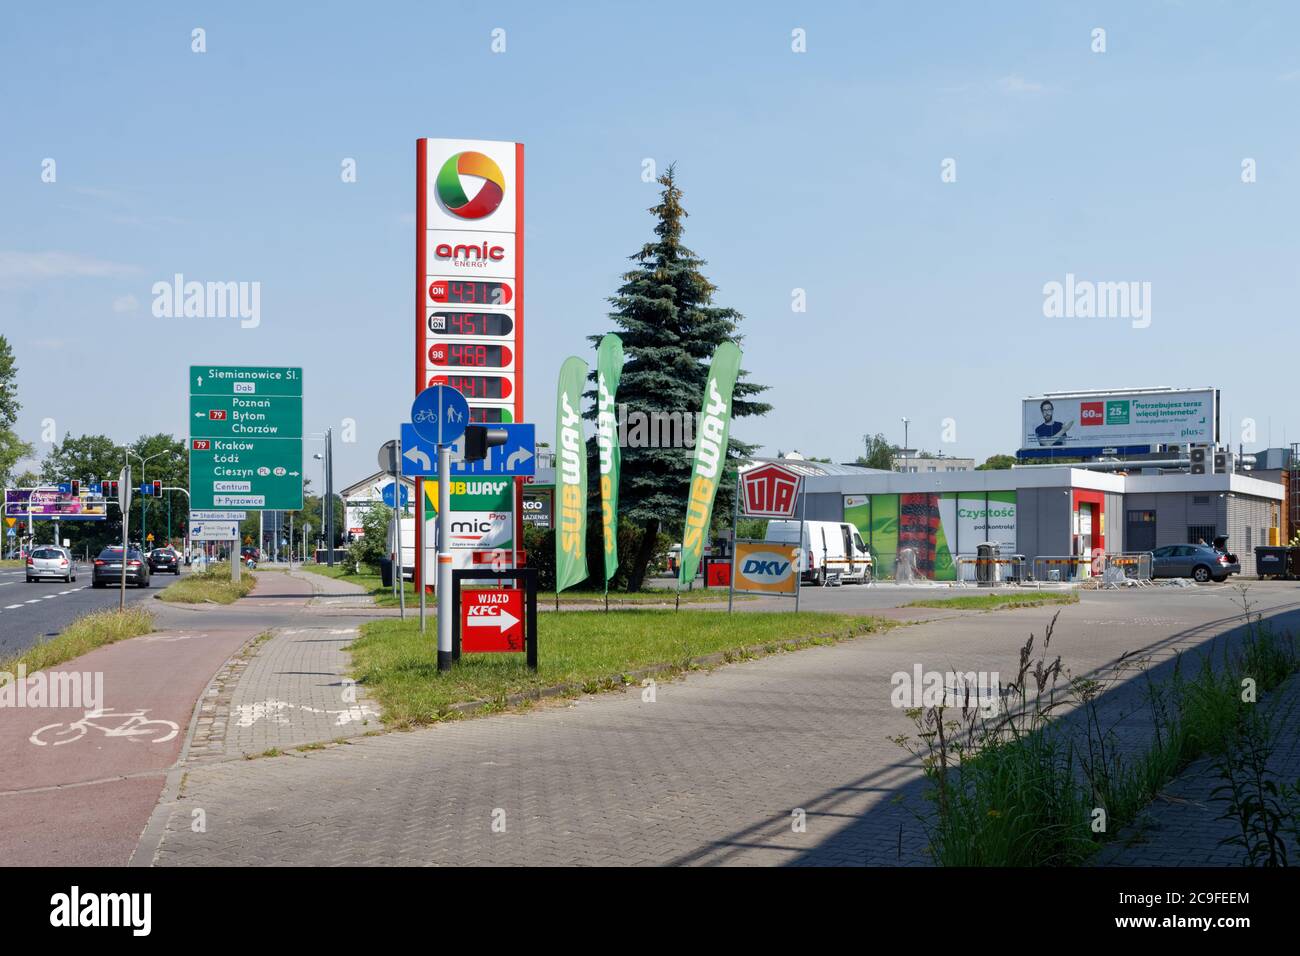 Amic Petrosll Station mit U-Bahn, KFC und Autowaschanlage Stockfoto